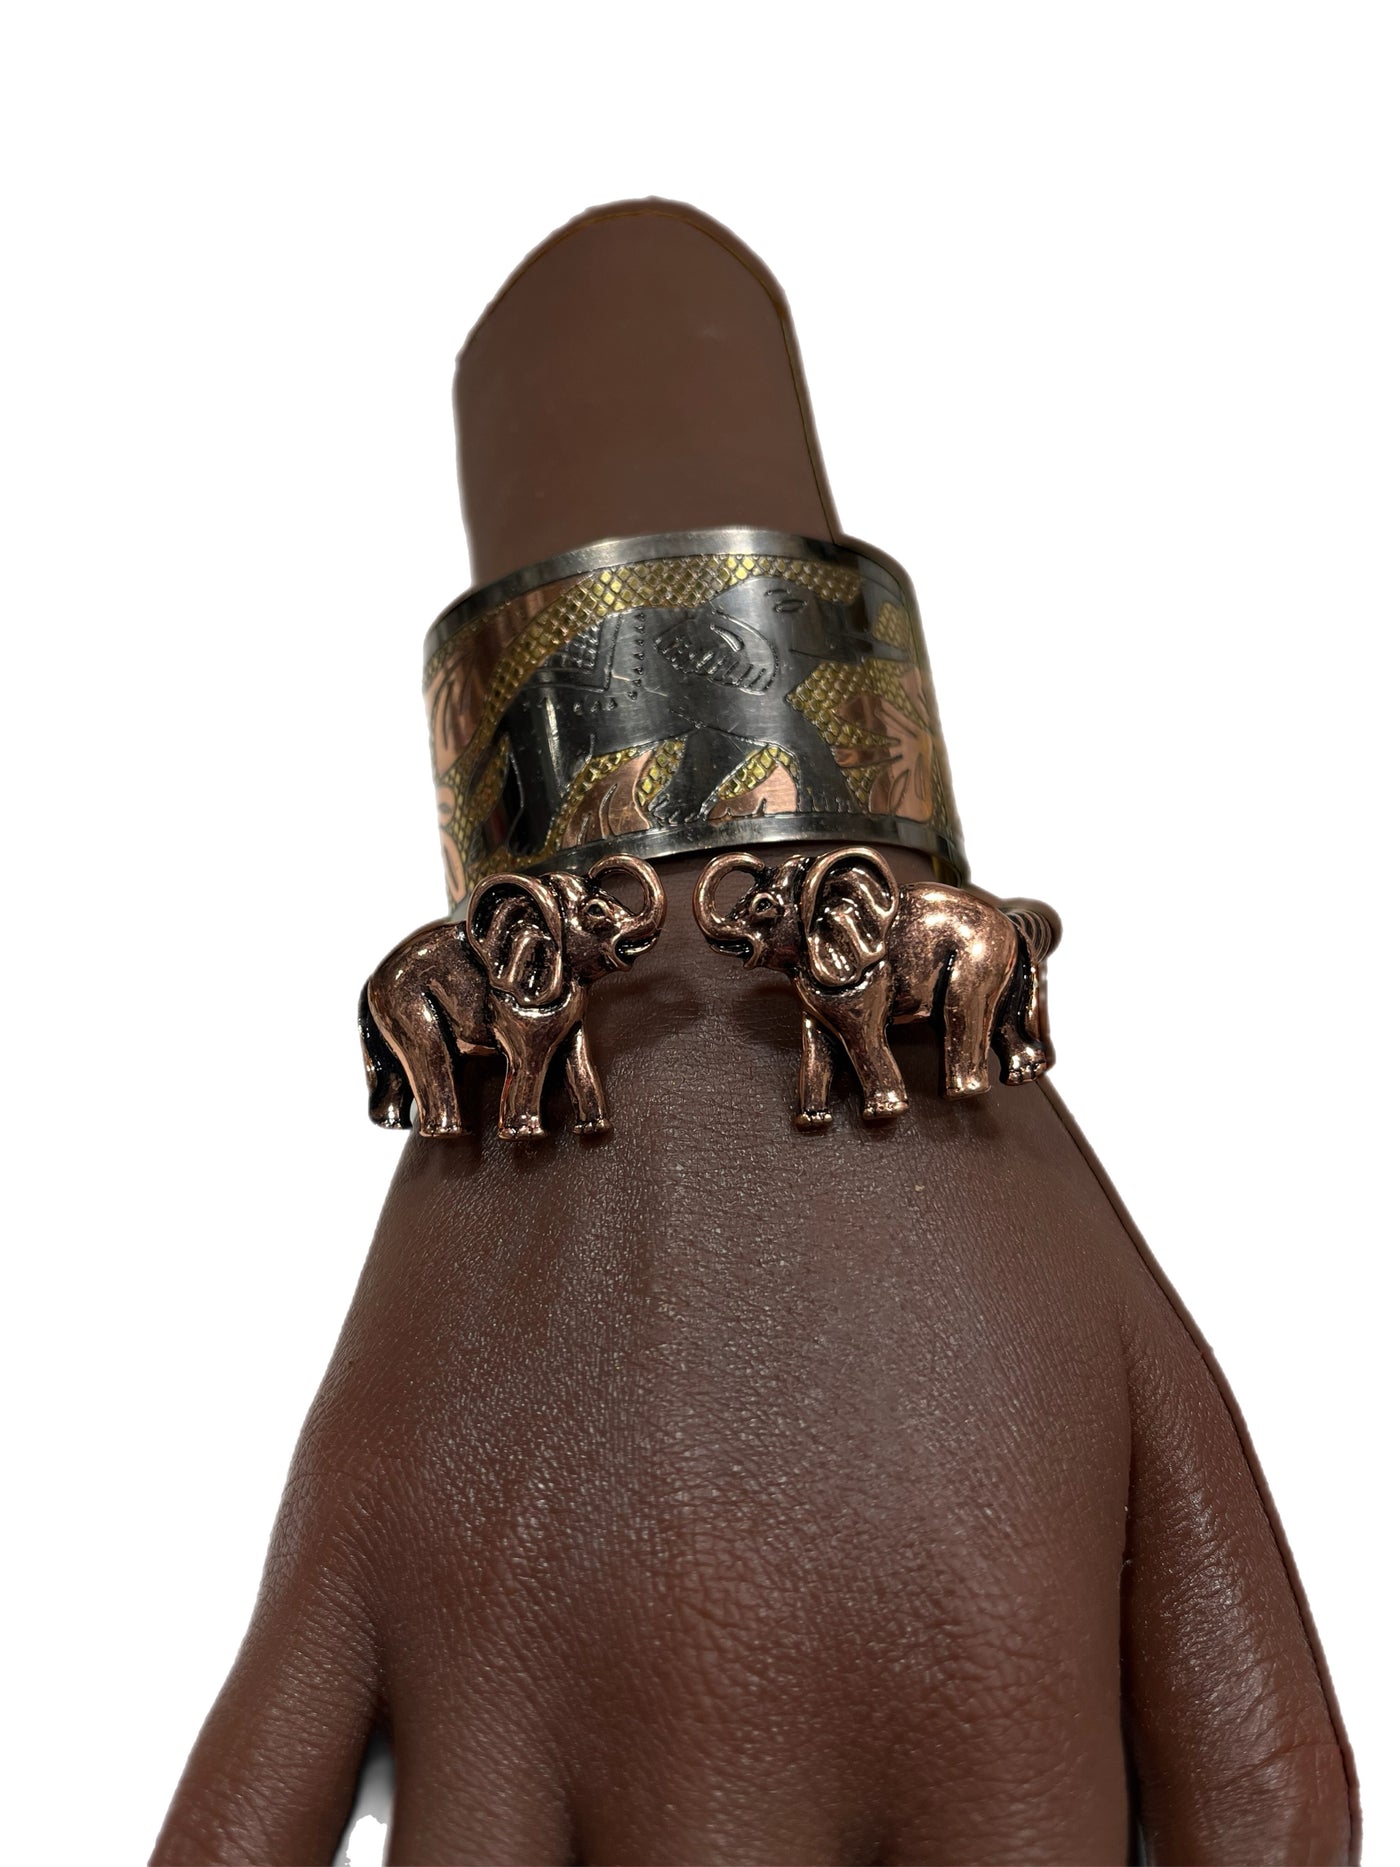 Edugye and Two Elephant bracelet set